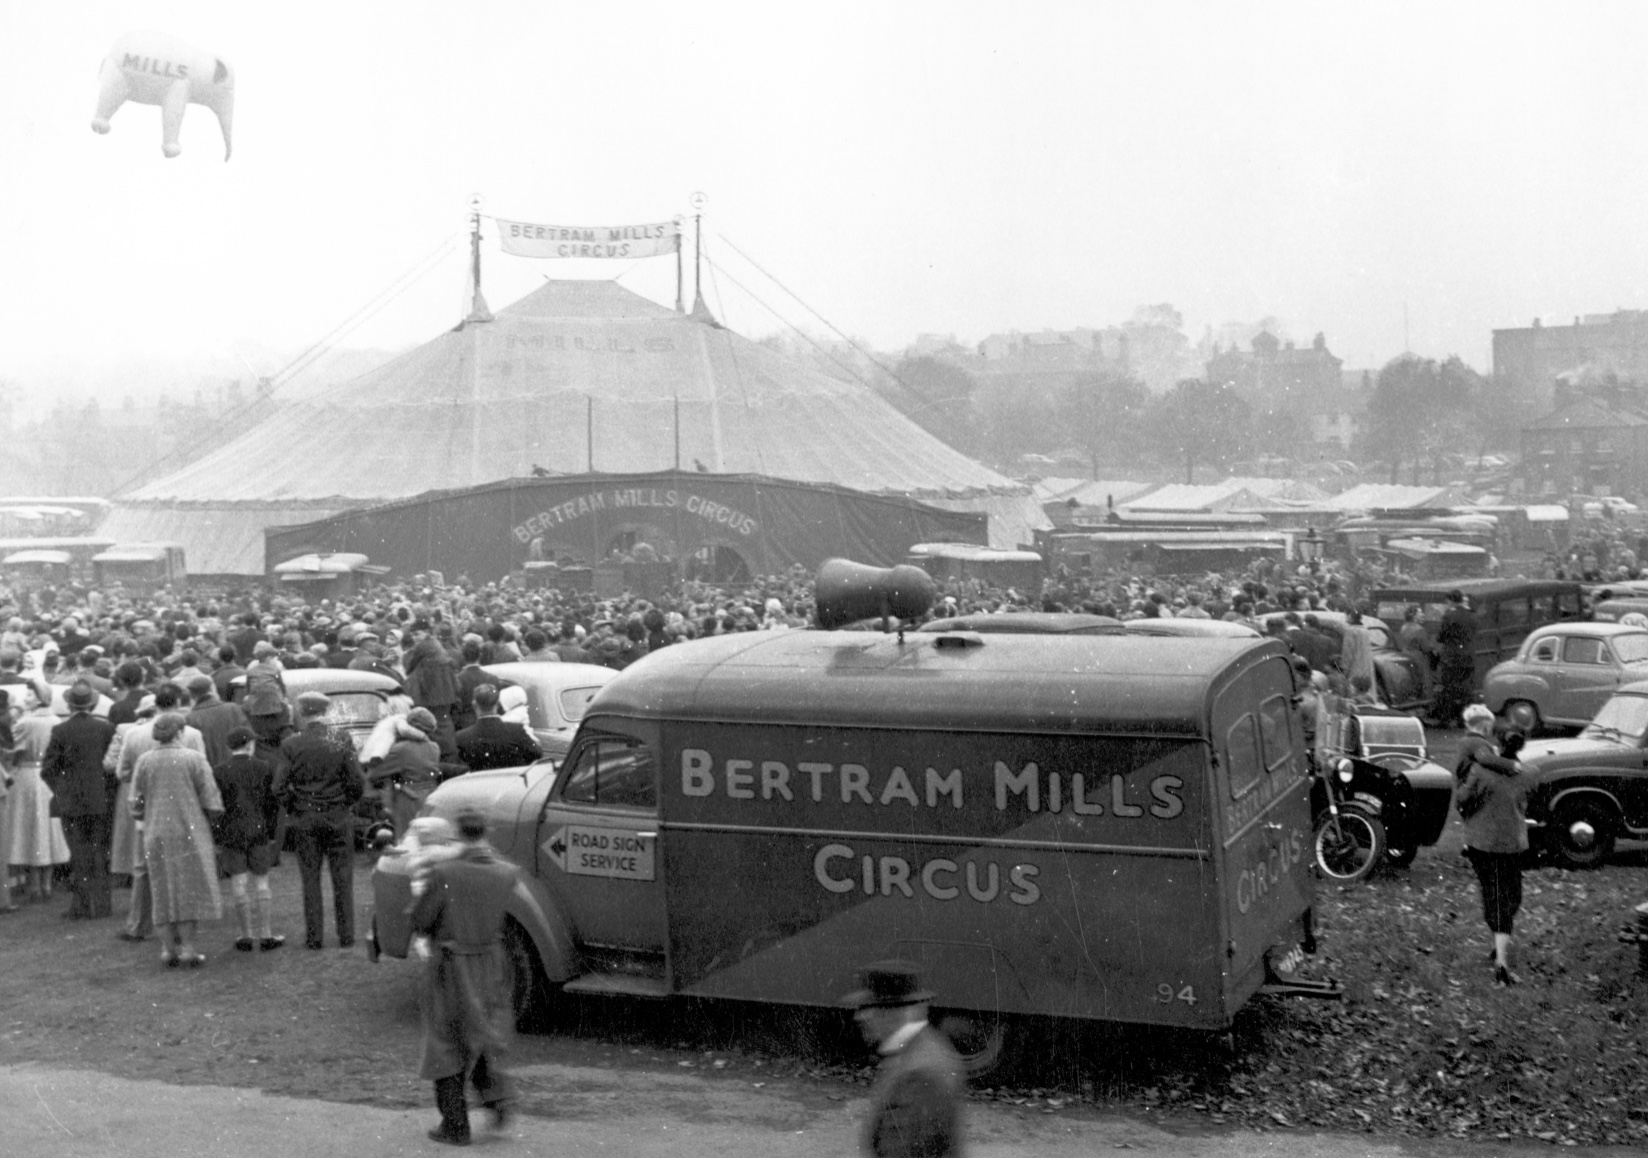 Bertram Mills Circus, Woodhouse Moor, 1950s © Leeds Civic Trust